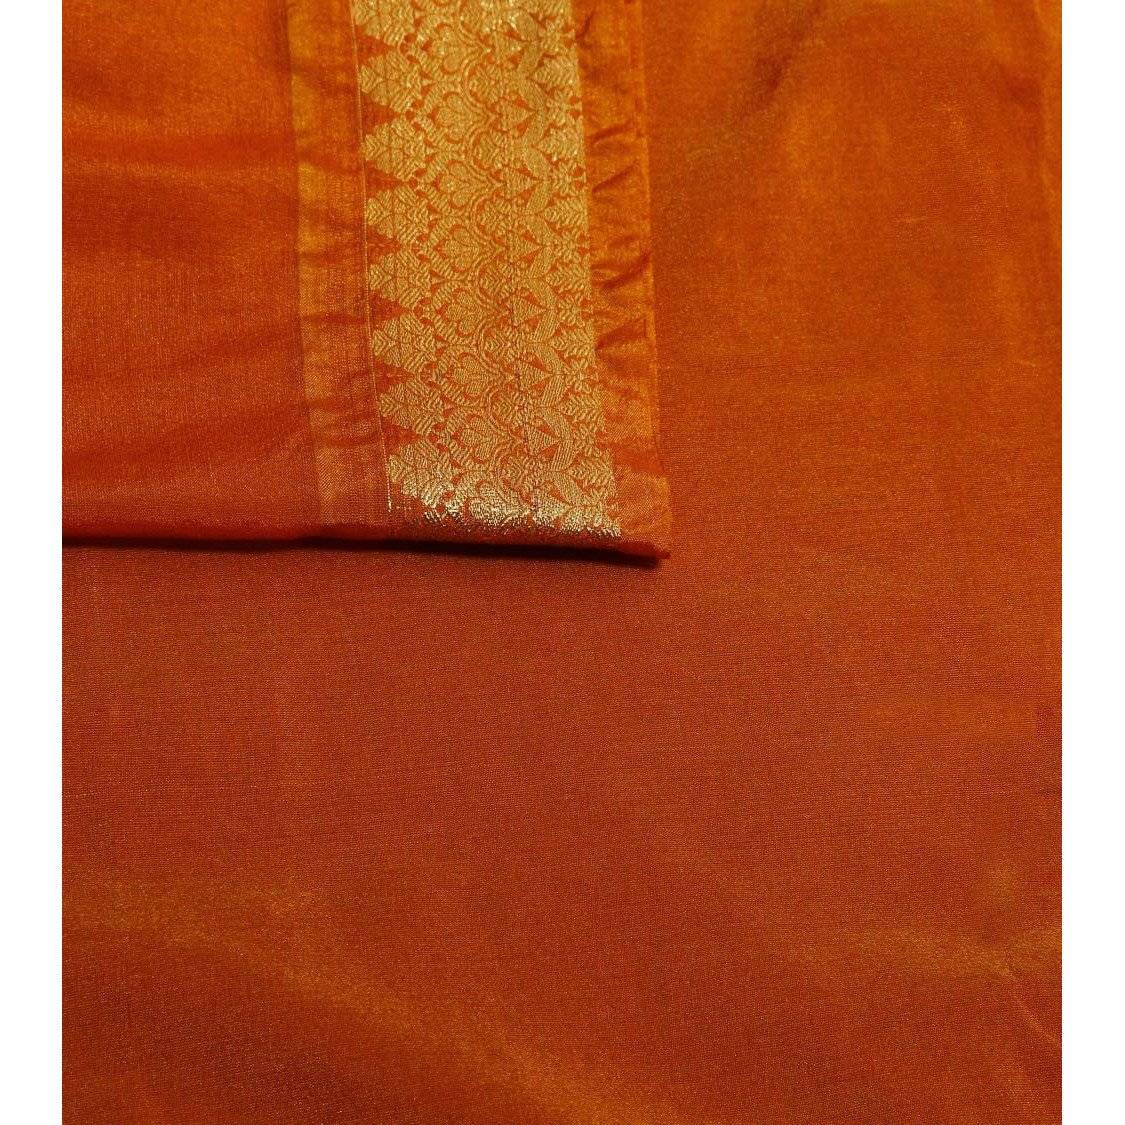 Orange Cotton Silk Saree with Zari Work